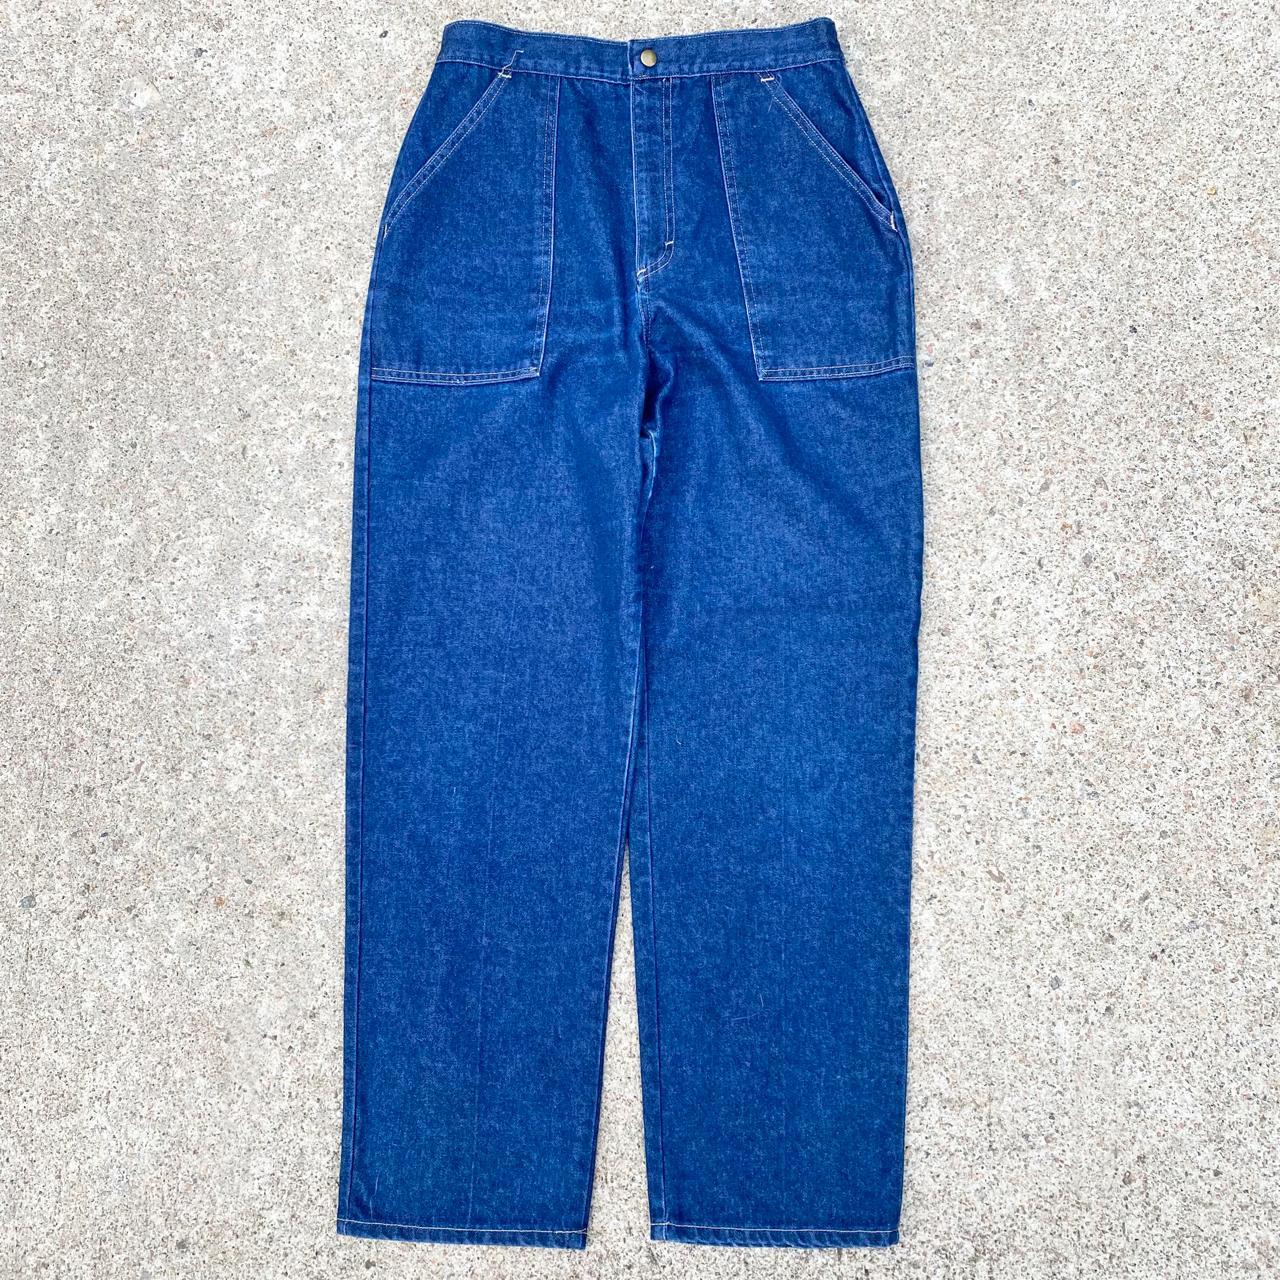 Sears Women's Blue Trousers